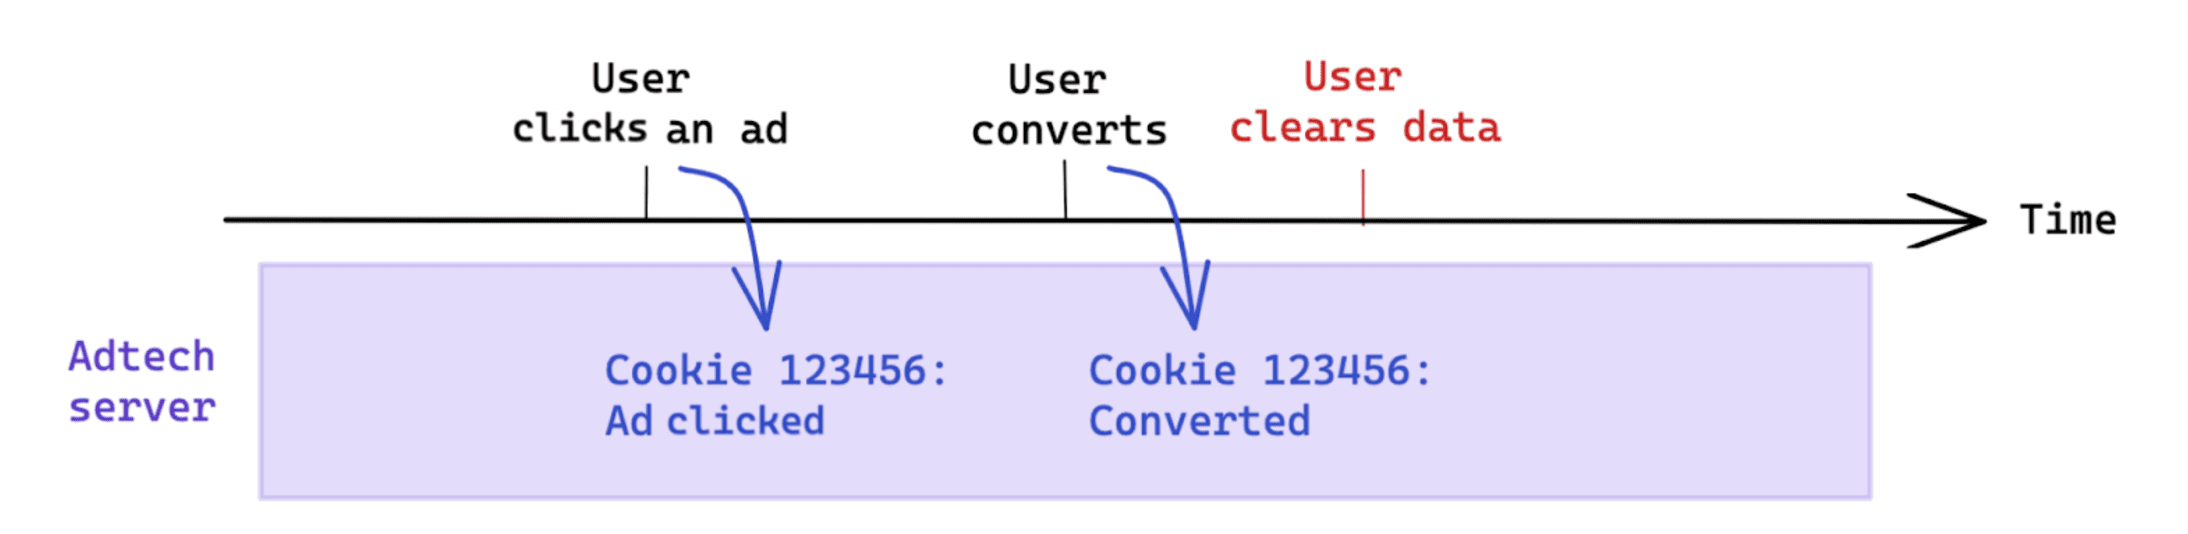 Việc xoá dữ liệu do người dùng thực hiện sau một lượt chuyển đổi sẽ không ảnh hưởng đến hoạt động đo lường dựa trên cookie.